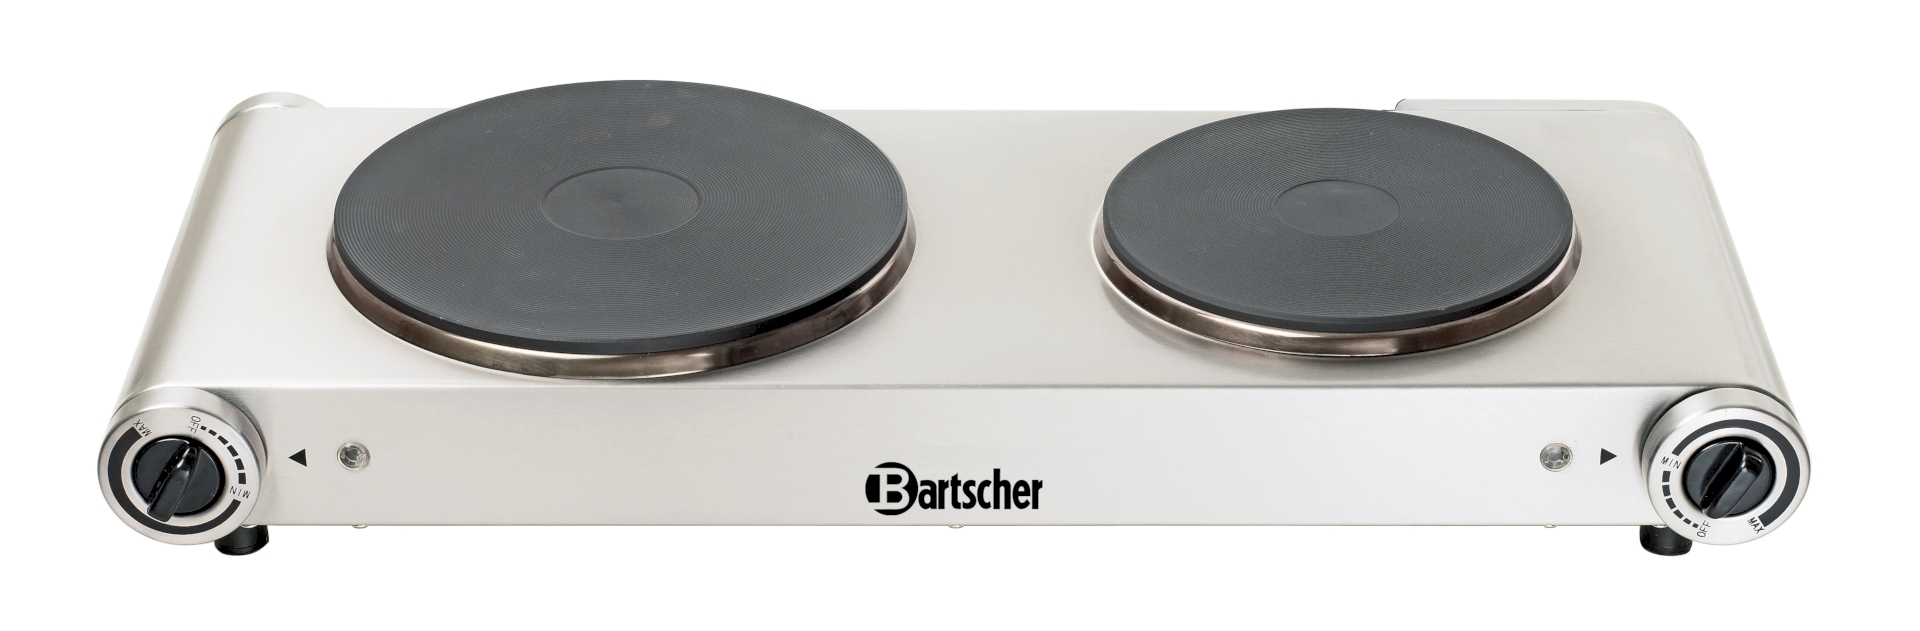 Bartscher Elektro-Kocher 2K2500